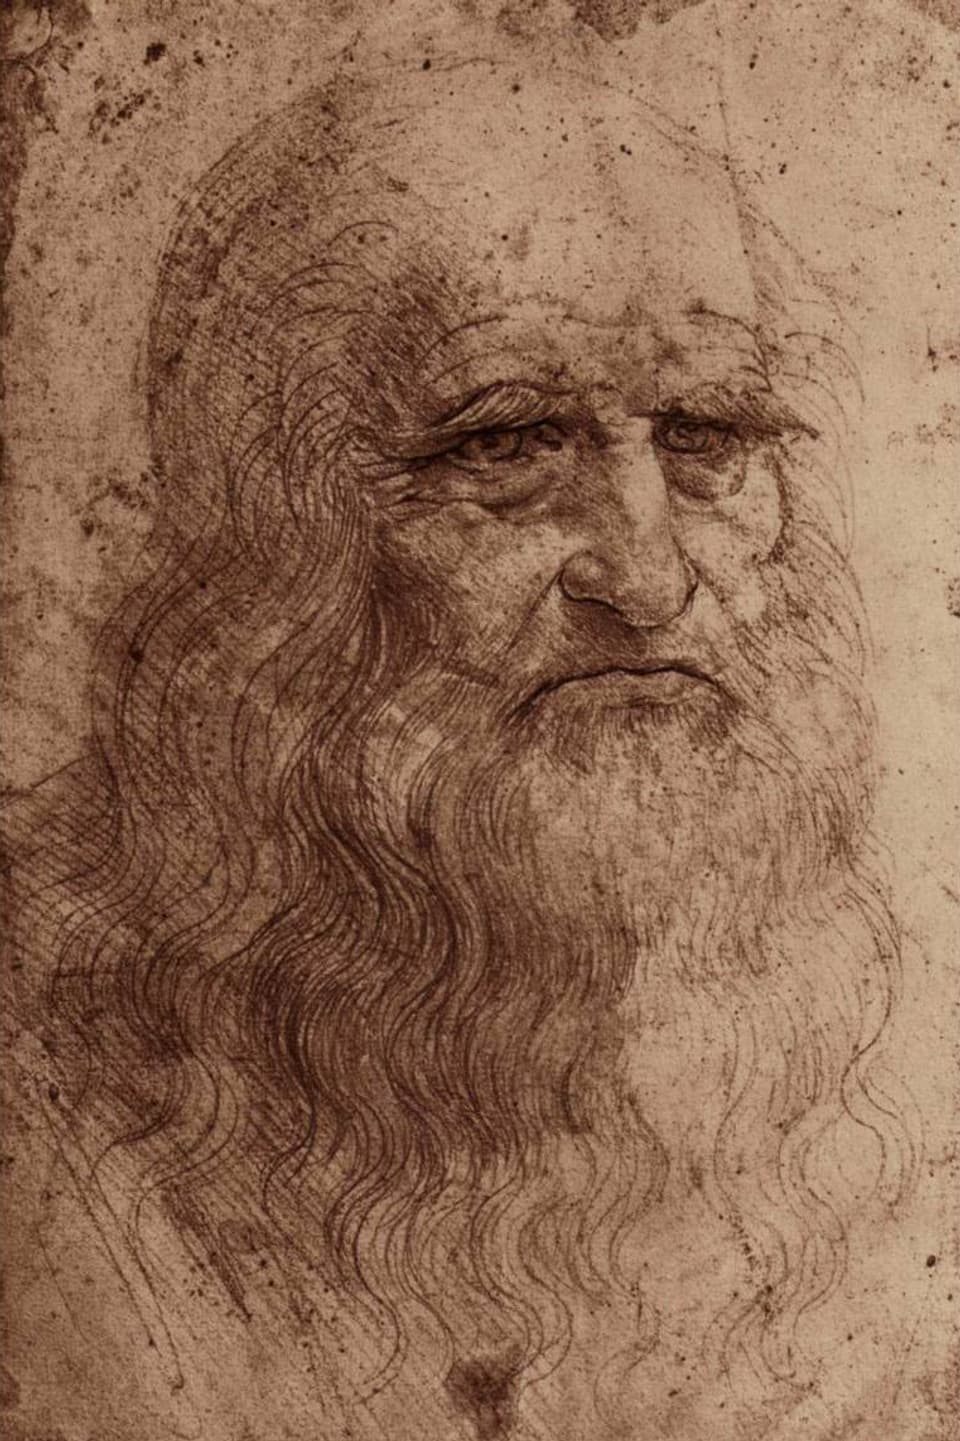 Porträt des italienischer Malers, Bildhauers, Architekten, Kunsttheoretikers, Naturforschers und Ingenieurs Leonardo da Vinci.